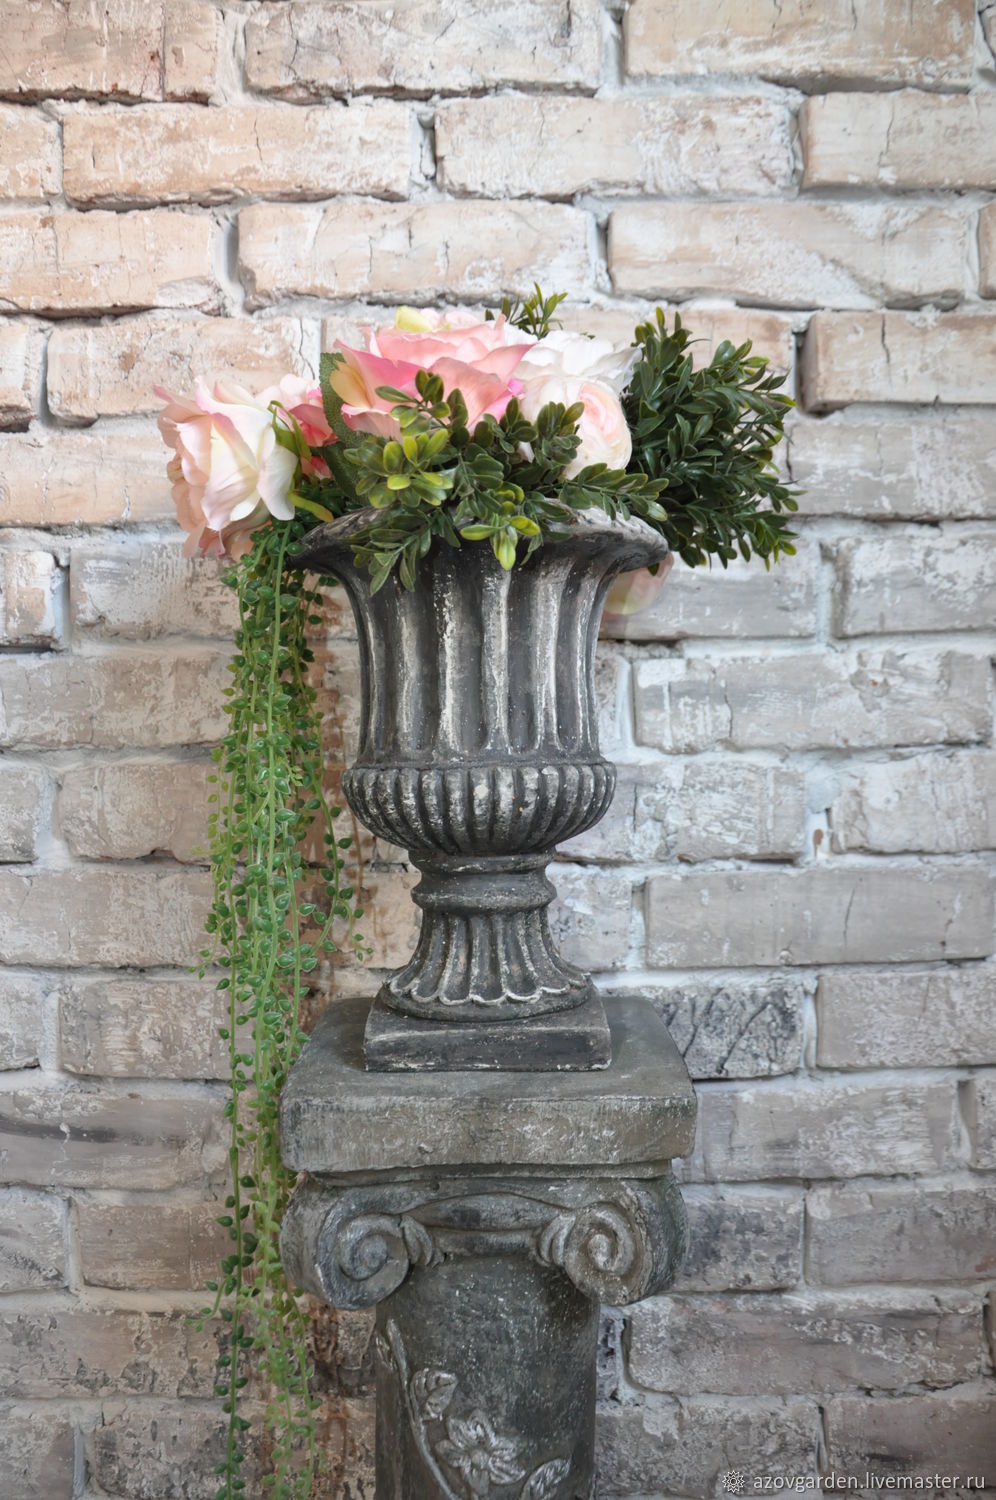 Fireplace Stones Decorative Fresh Concrete Flowerpot Aged On the Leg for the Garden Street Flowerpot – Ð·Ð°ÐºÐ°Ð·Ð°ÑÑ Ð½Ð° Ð¯ÑÐ¼Ð°ÑÐºÐµ ÐÐ°ÑÑÐµÑÐ¾Ð² – Ivs4l